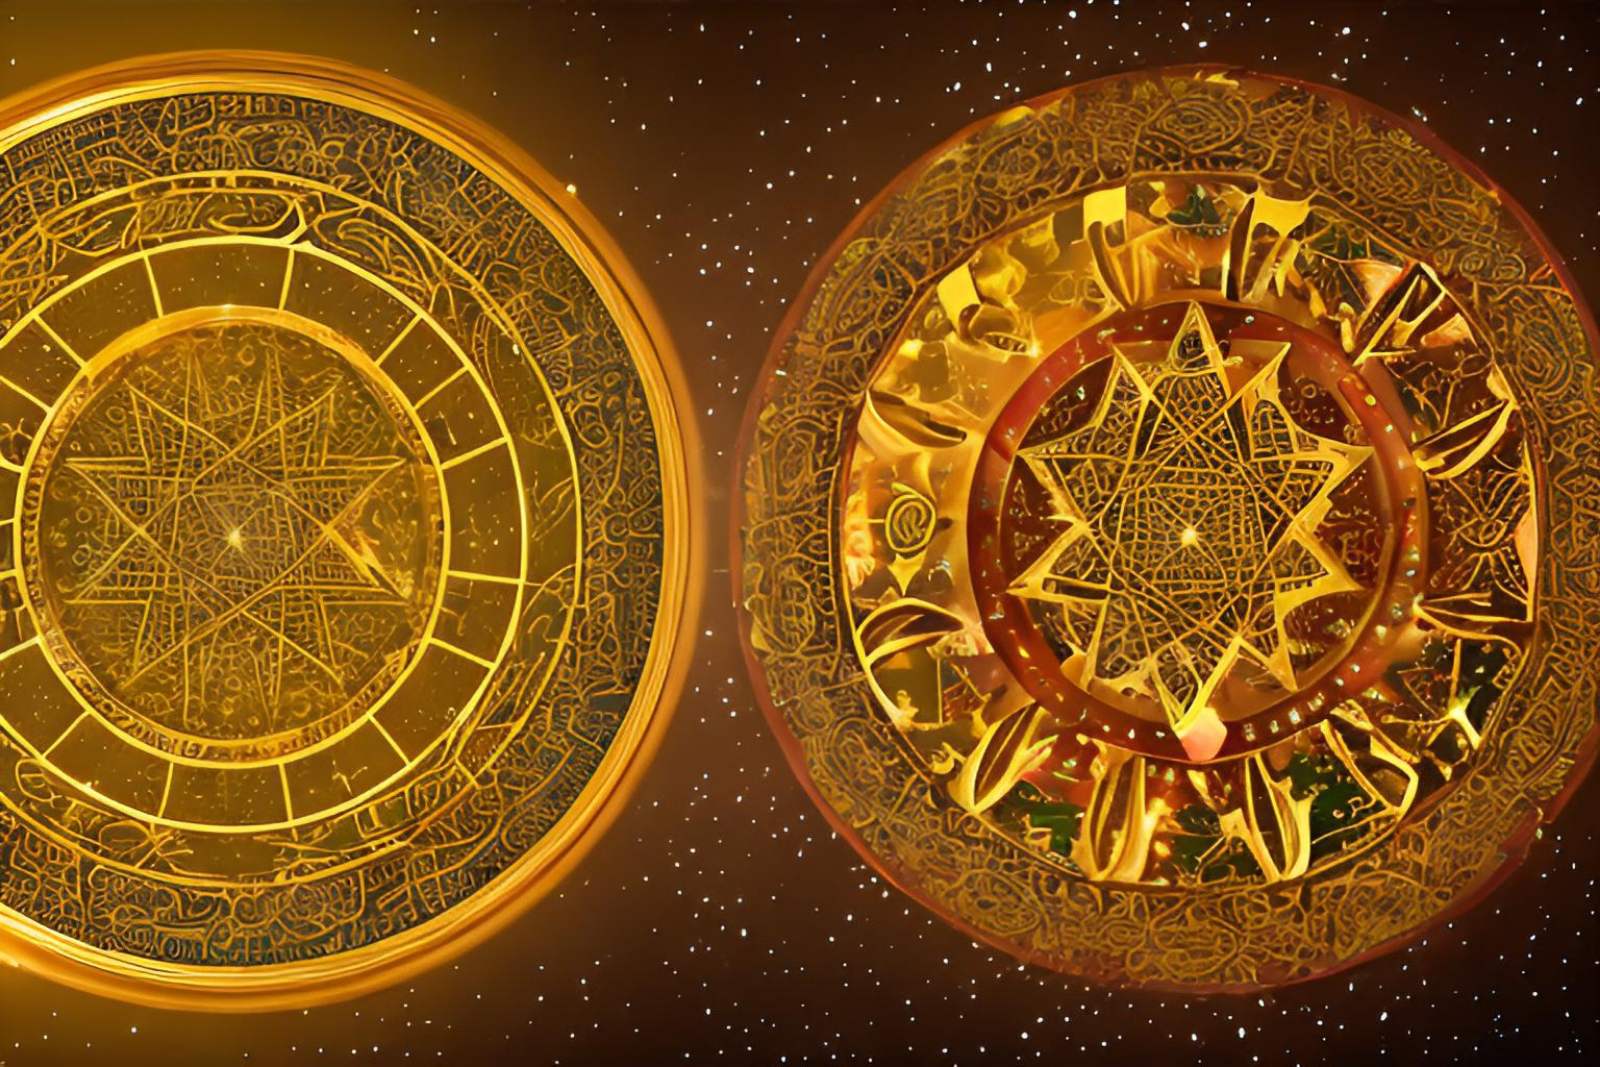  Οι ημερομηνίες με τις πιο μεγάλες απαιτήσεις με βάση τους Άραβες Αστρολόγους 1